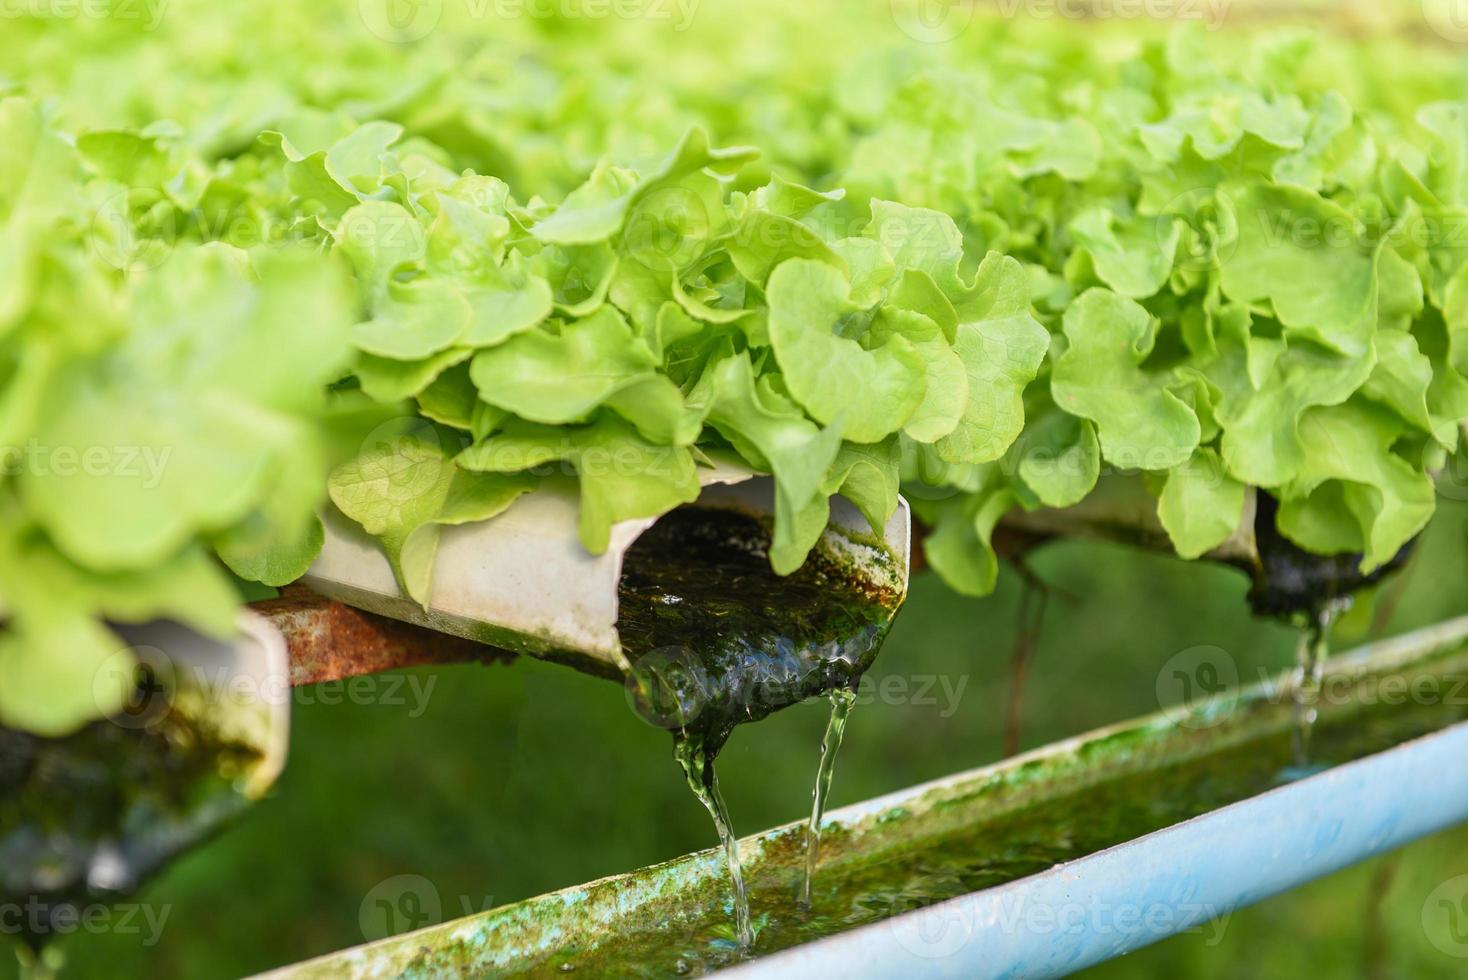 laitue hydroponique poussant dans le jardin salade de laitue de ferme hydroponique biologique pour une alimentation saine, légumes de serre sur conduite d'eau avec chêne vert et chêne rouge. photo